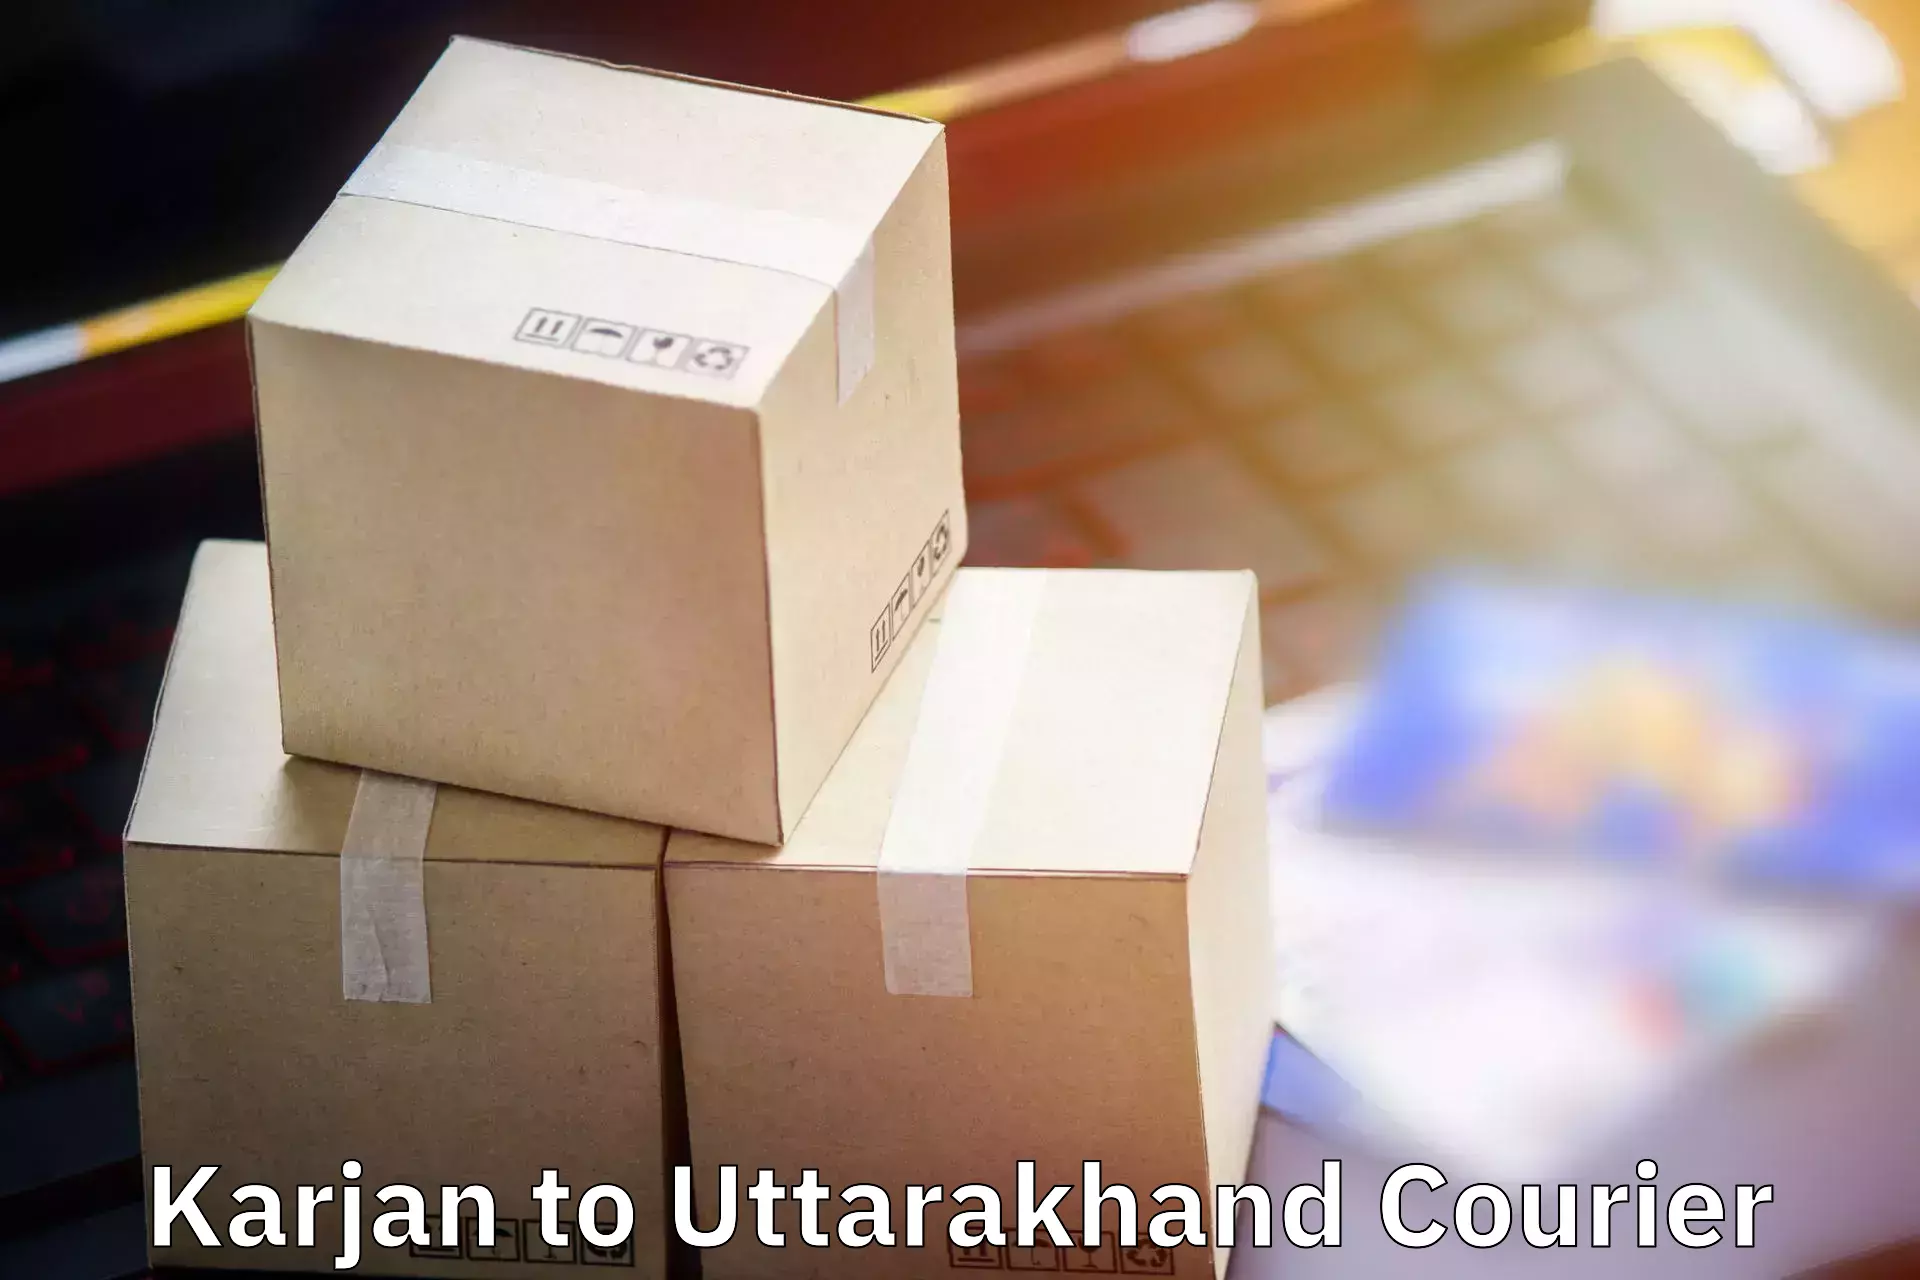 Baggage shipping experience Karjan to Haridwar